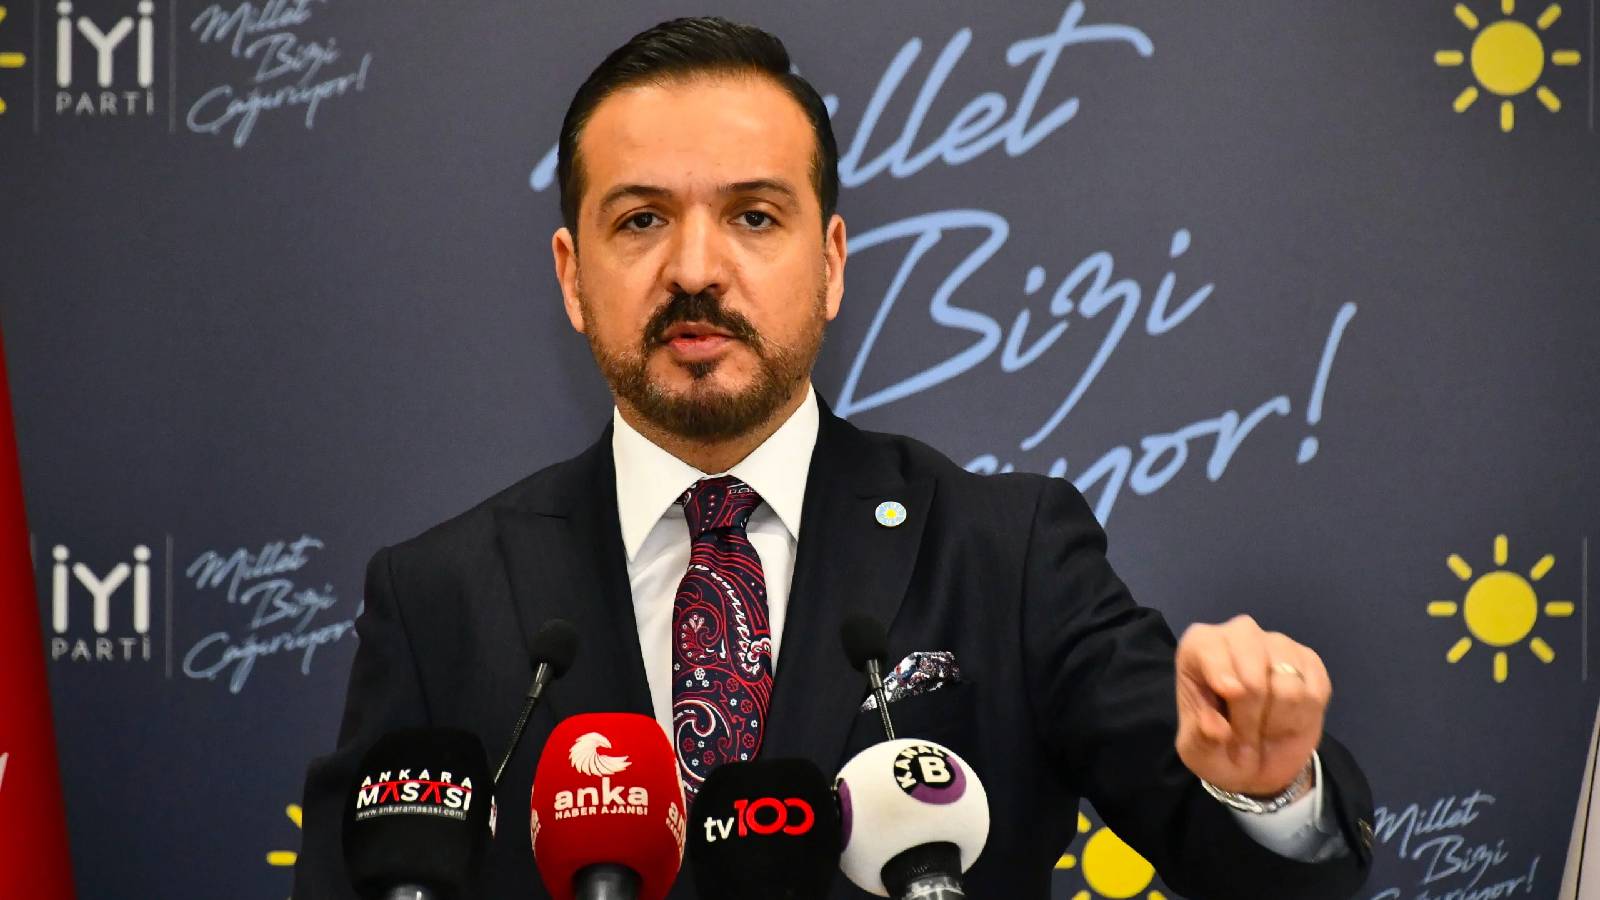 İyi Parti Sözcüsü Zorlu: Türkiye seçime gitmeden sistemin tadilatını konuşacak